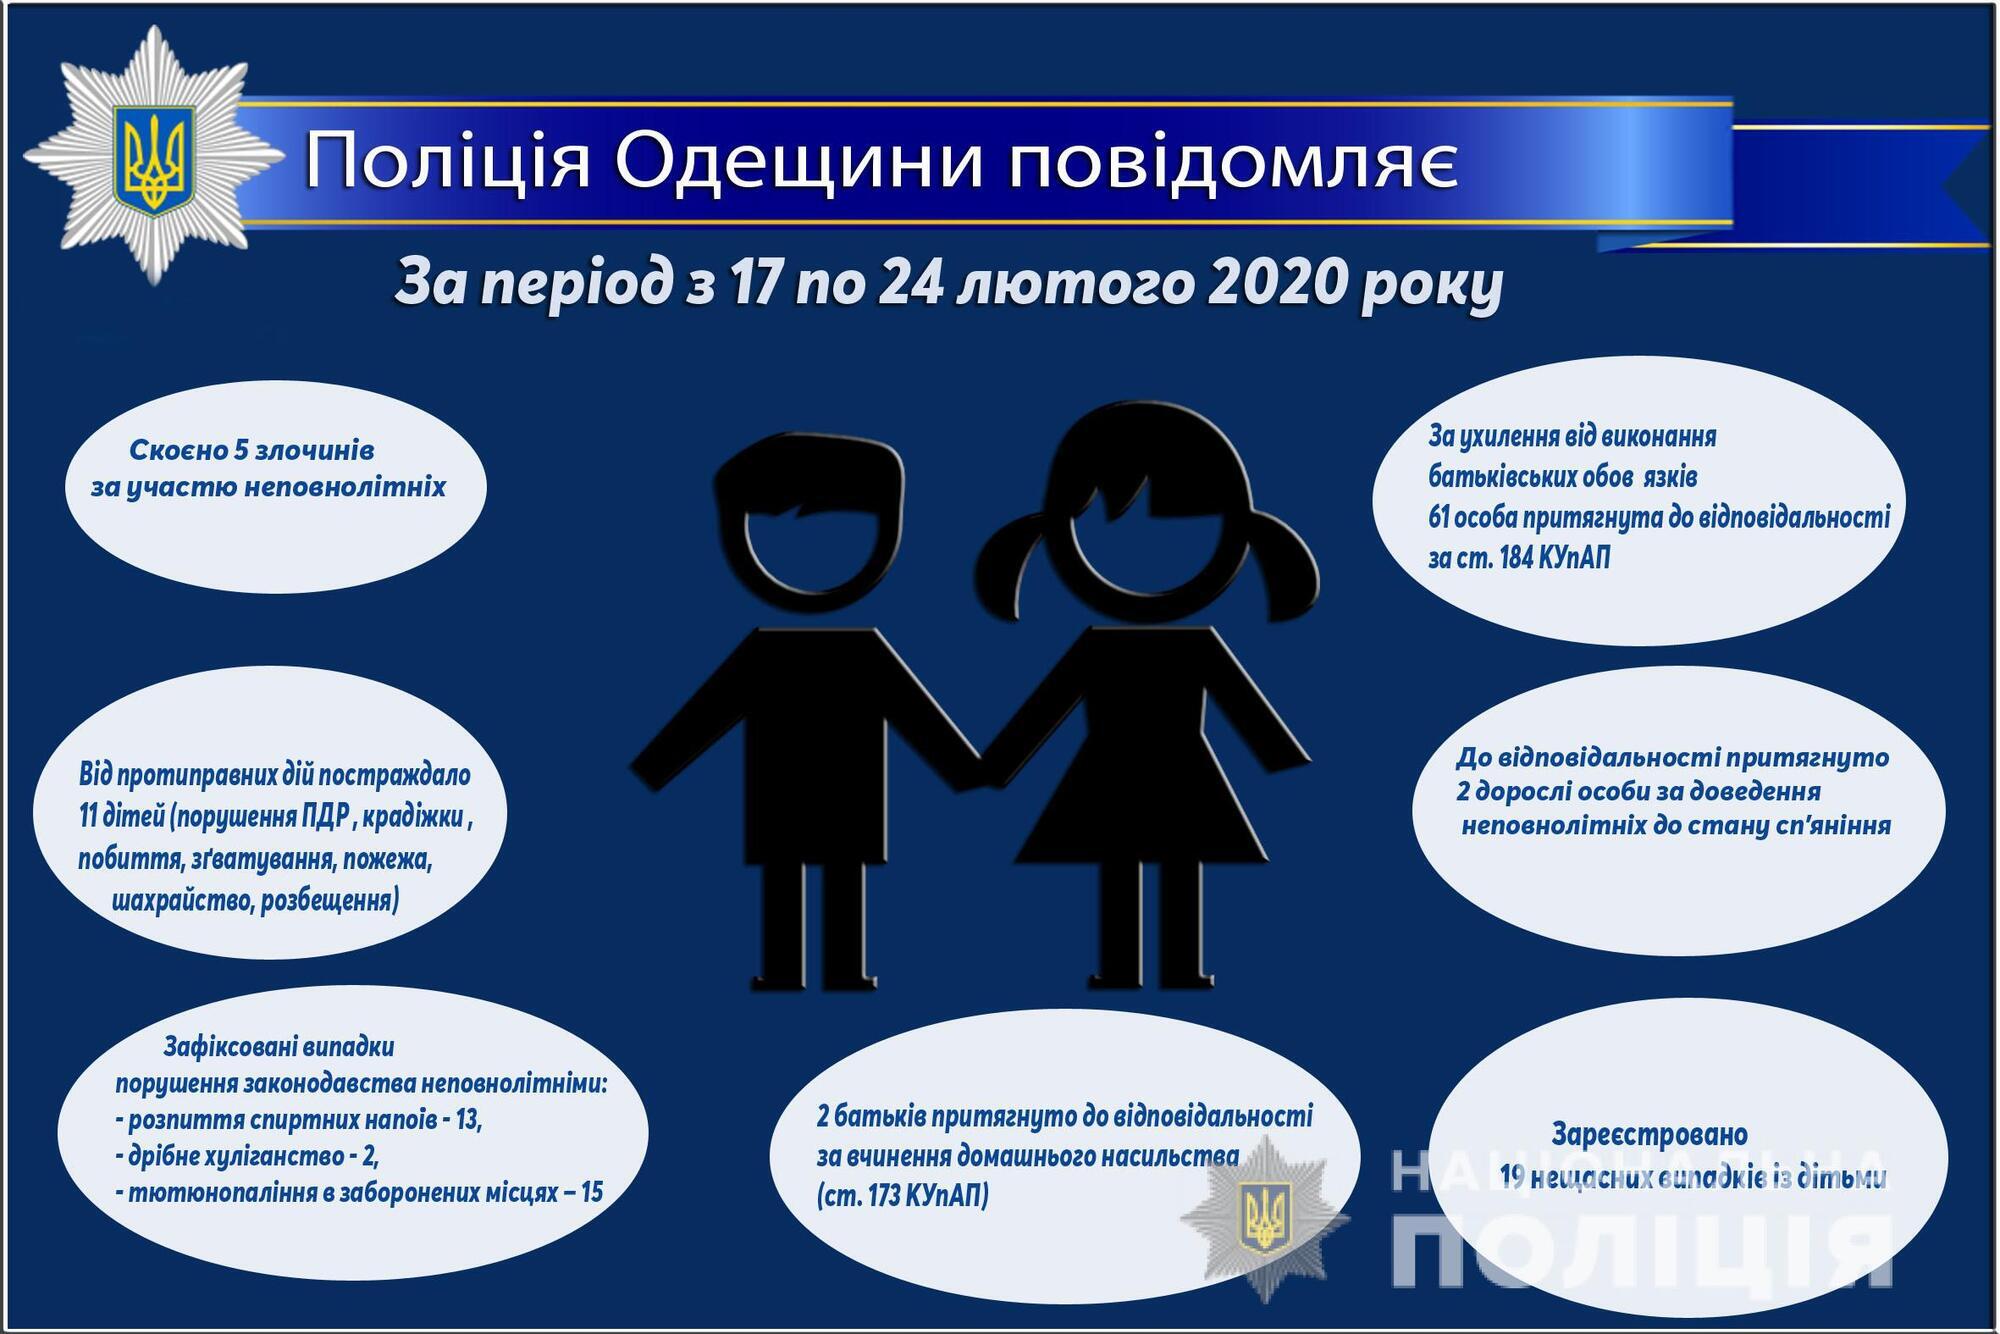 Про стан роботи поліції Одещини з протидії порушенням законодавства неповнолітніми та відносно них за період з 17 по 24 лютого 2020 року